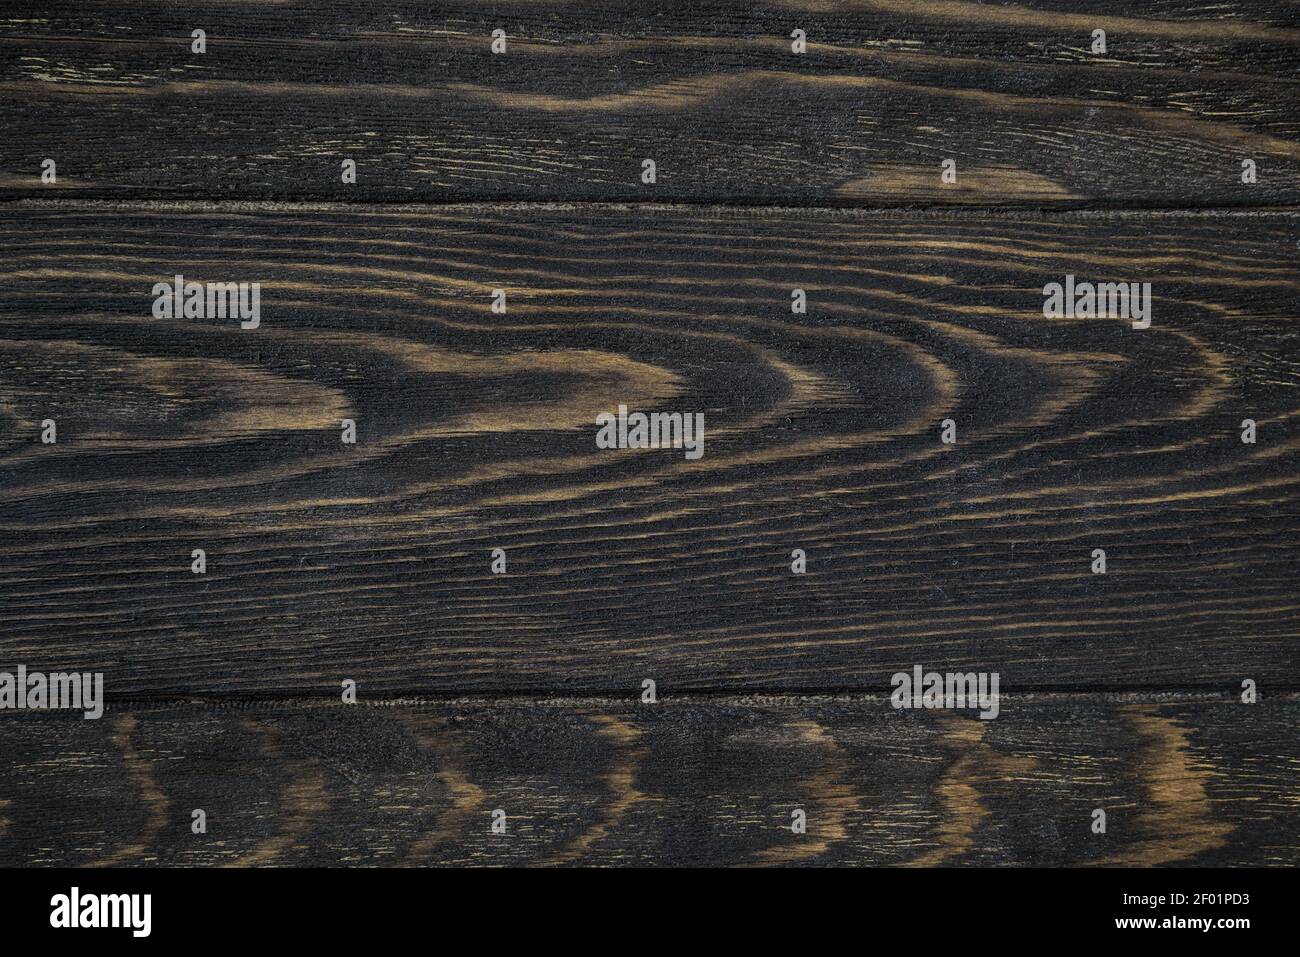 Holzstruktur Hintergrund, Draufsicht auf dunklen rauen Holztisch. Rustikale braune Holzplanken für Hintergrund und Tapete. Lackierte Oberfläche von alten Stallbrettern Stockfoto